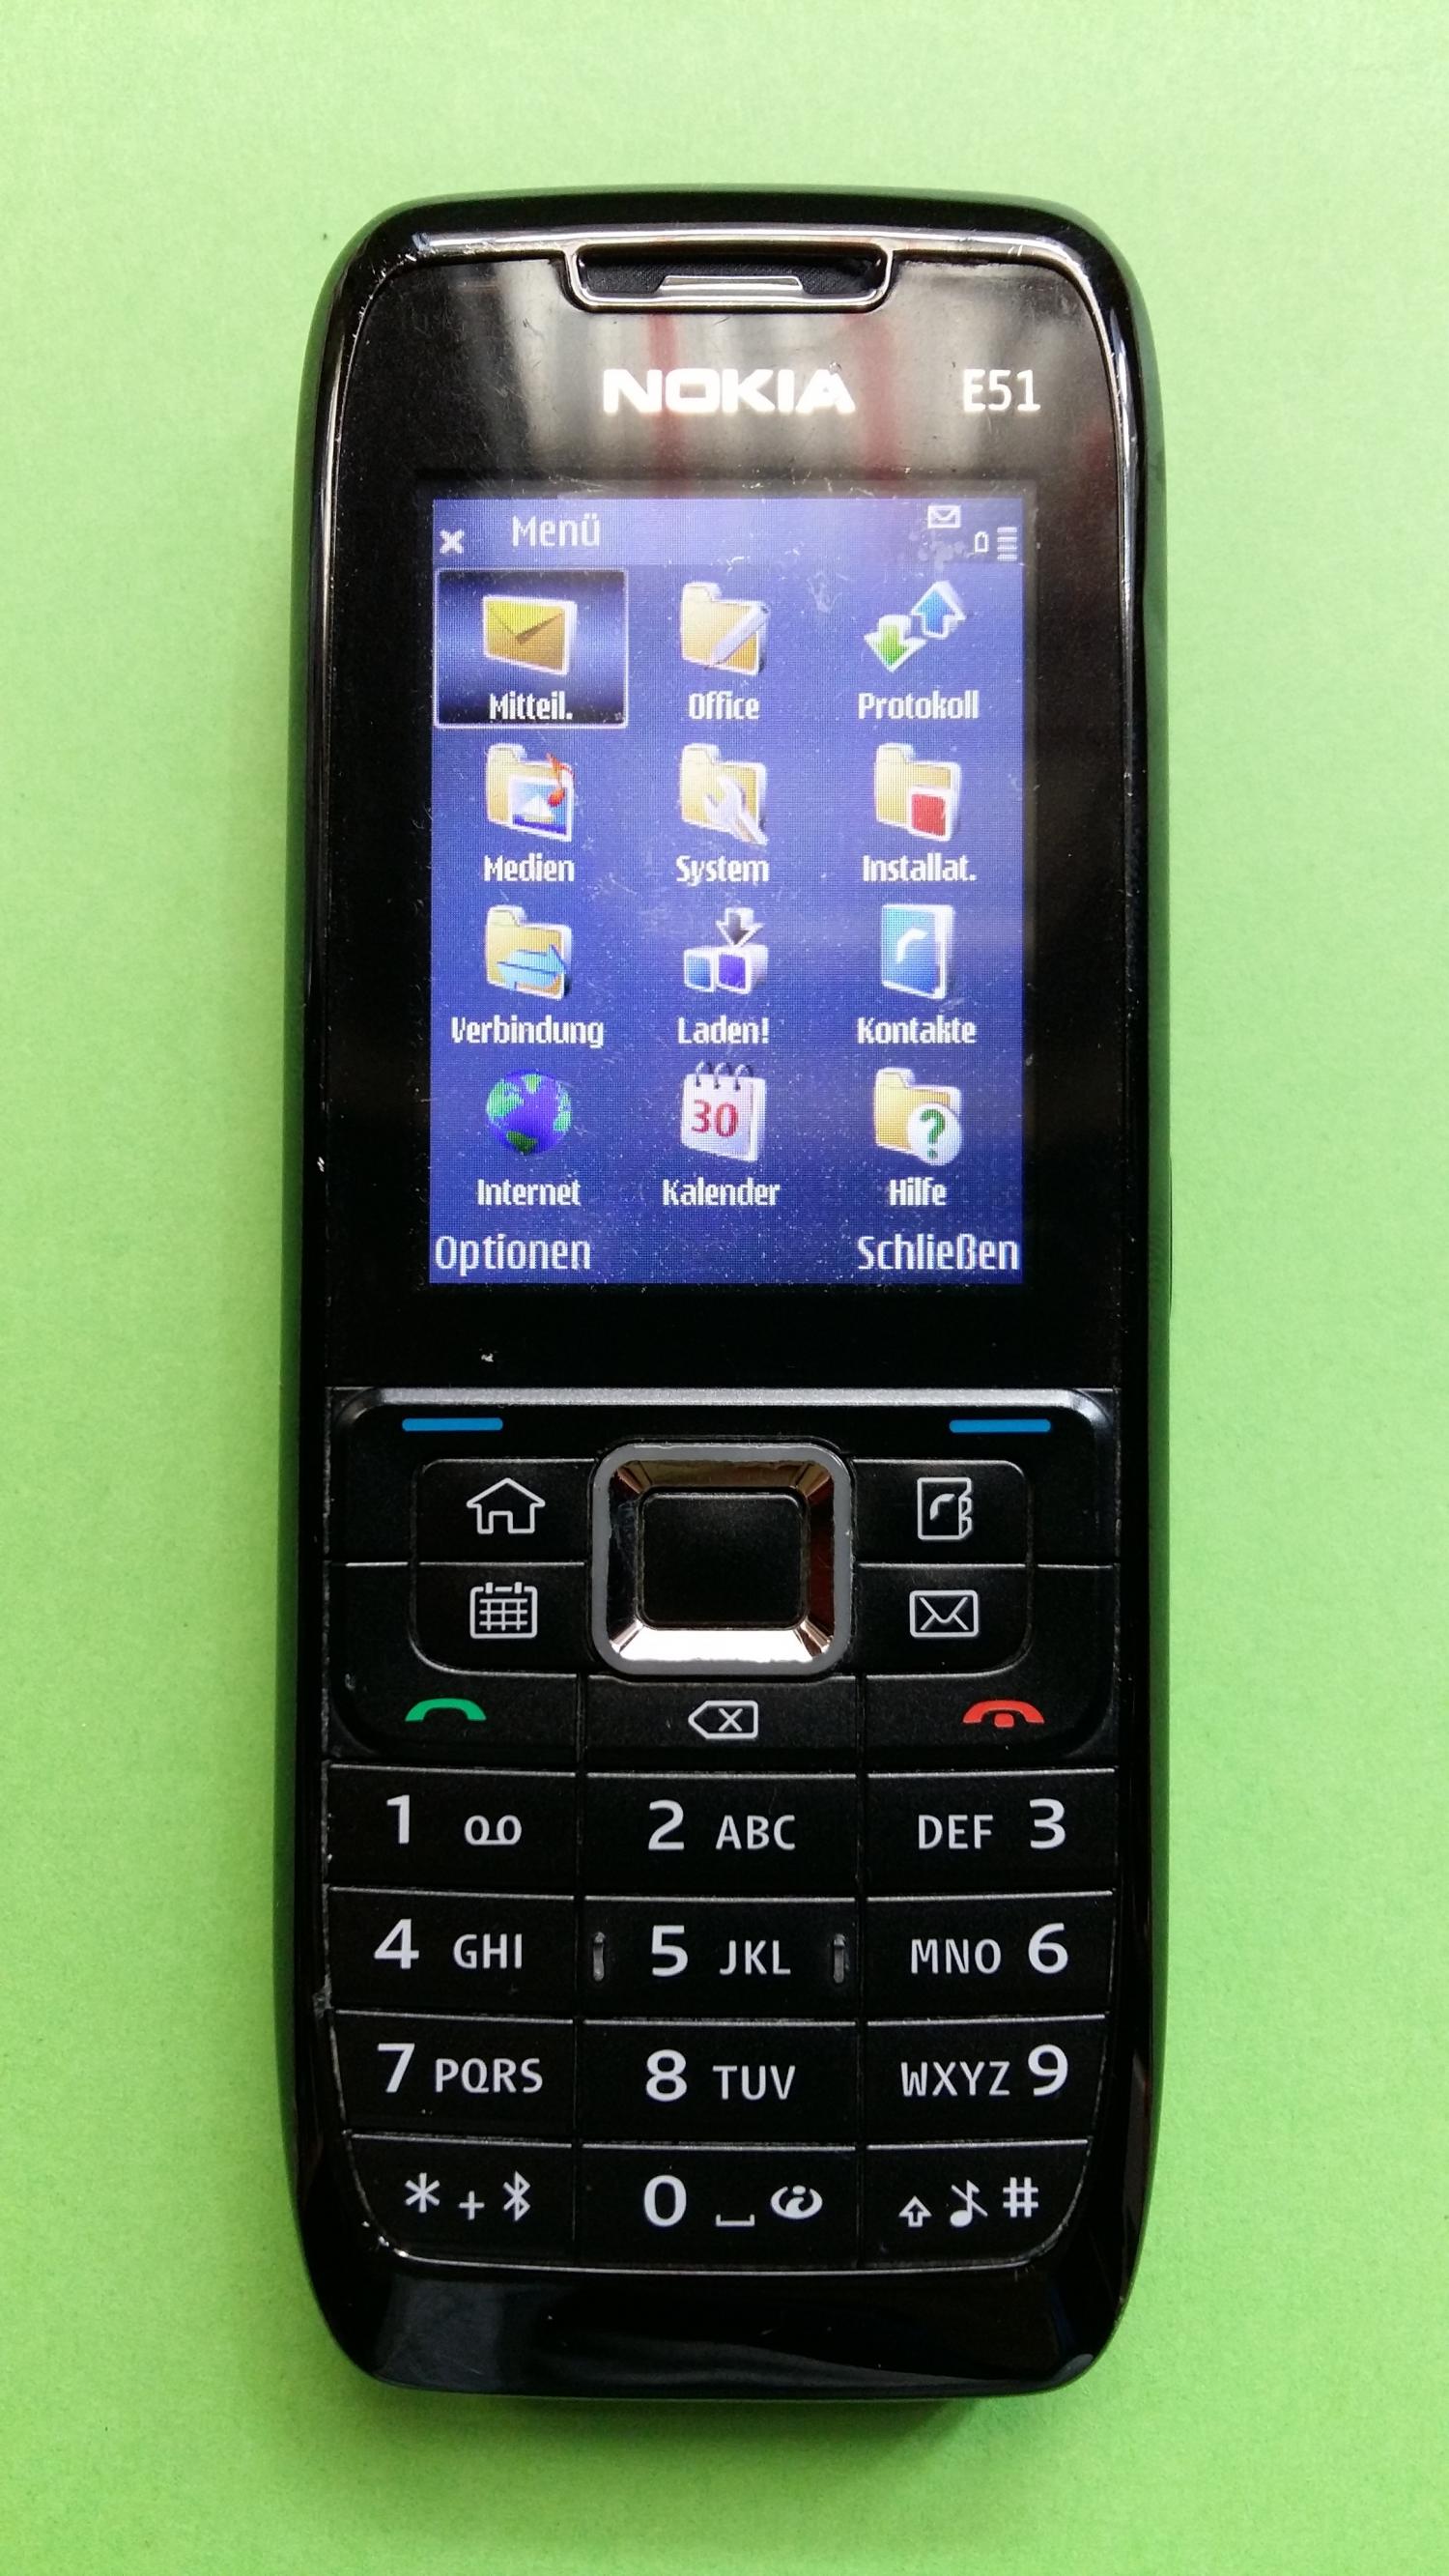 image-7339108-Nokia E51-1 (1)1.jpg